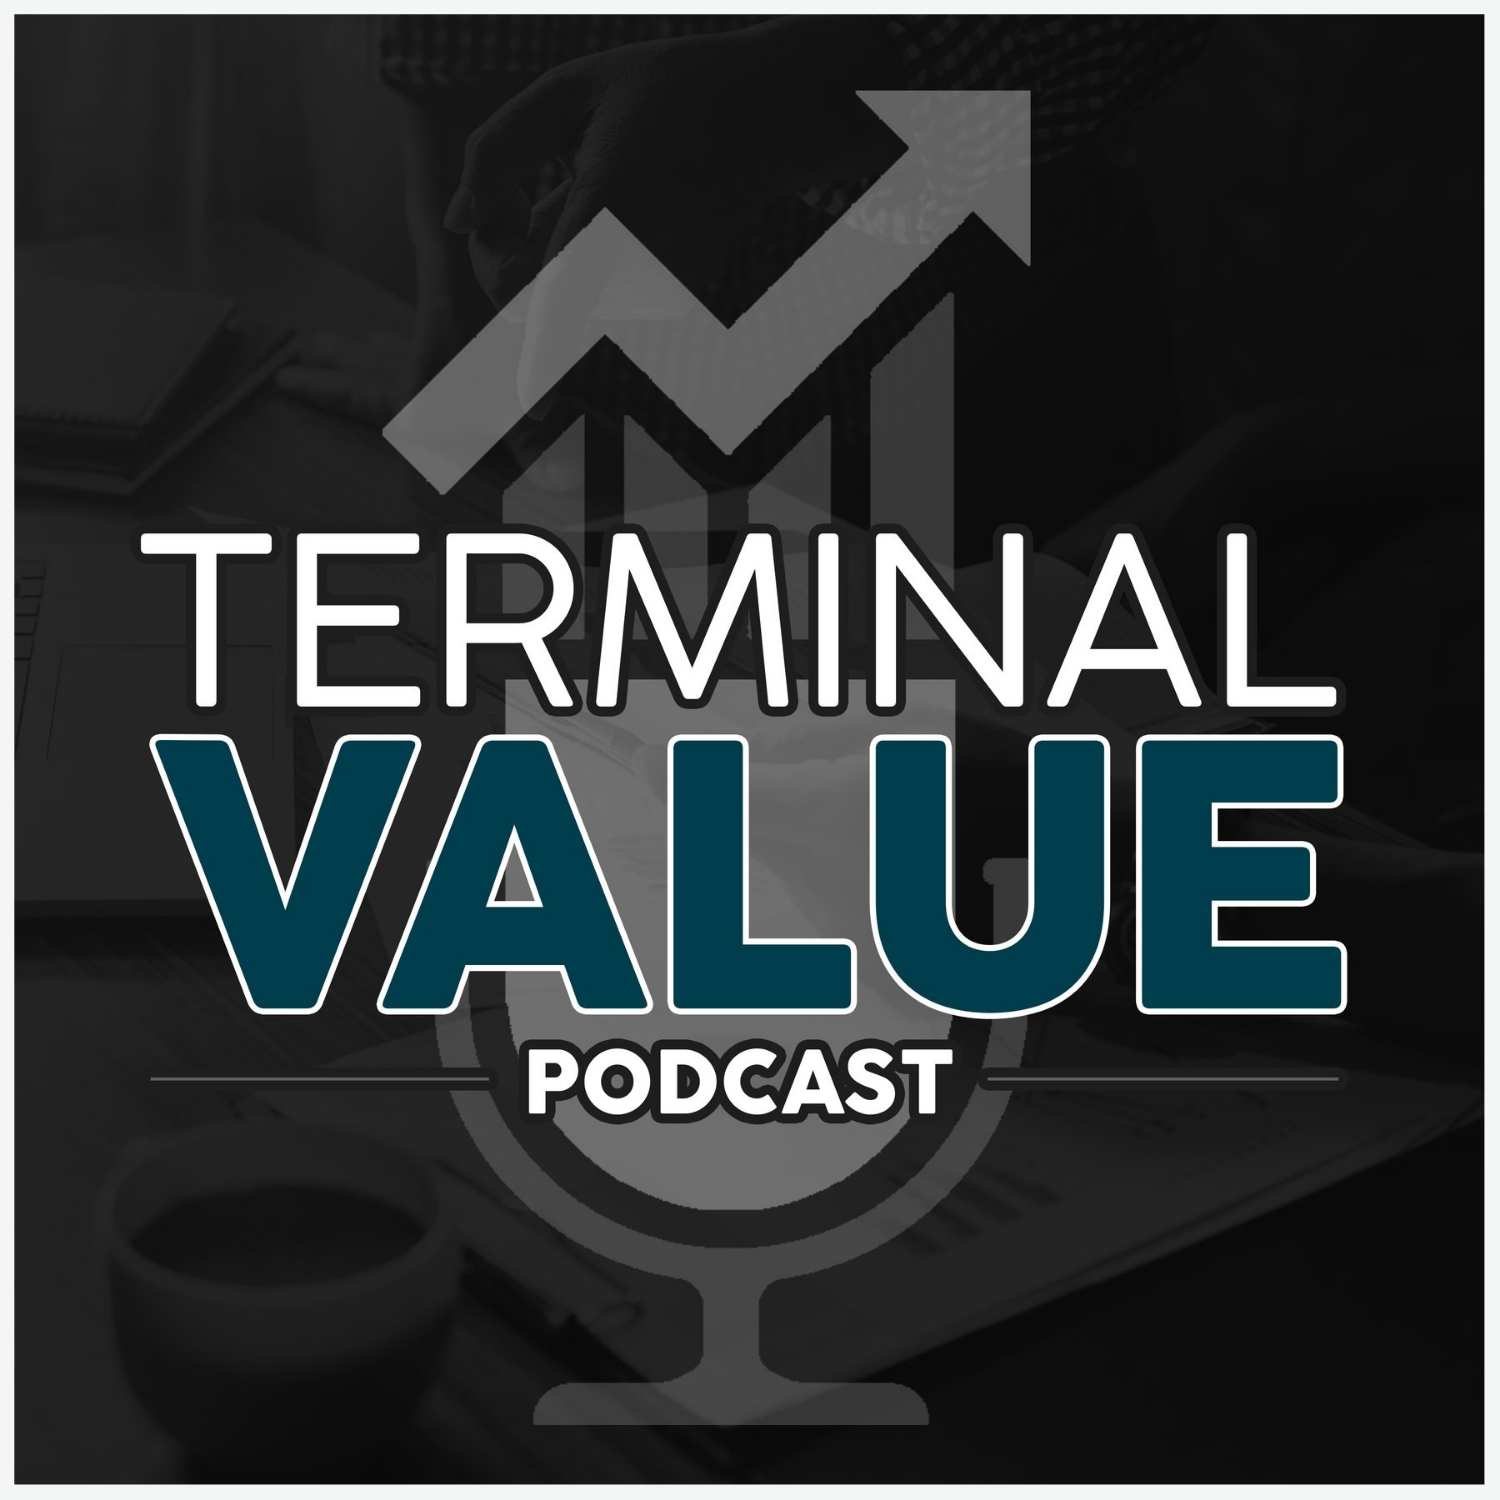 Artwork for podcast Terminal Value